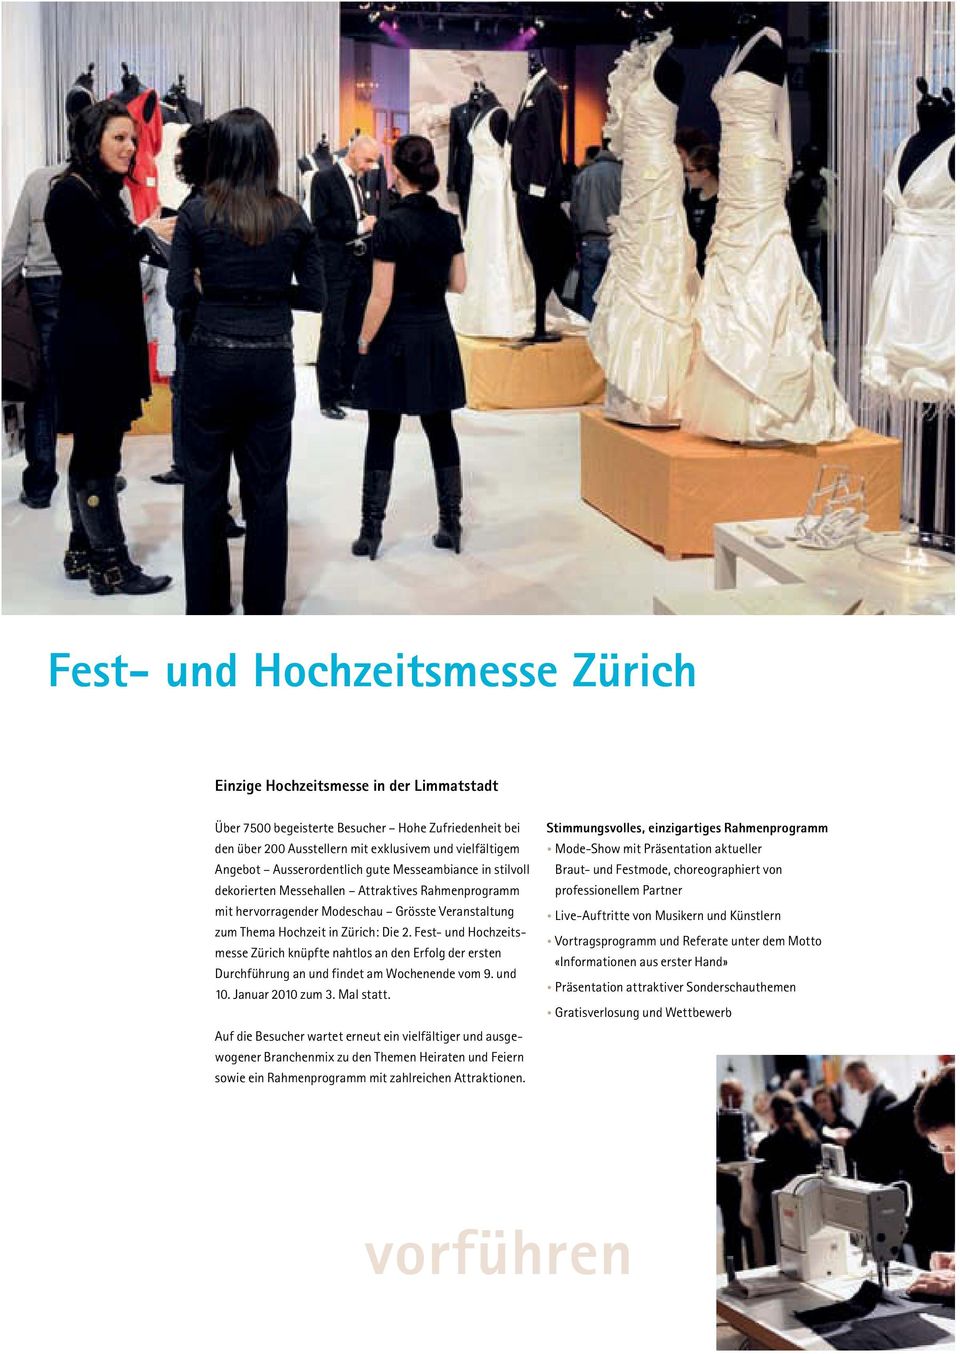 Fest- und Hochzeitsmesse Zürich knüpfte nahtlos an den Erfolg der ersten Durchführung an und findet am Wochenende vom 9. und 10. Januar 2010 zum 3. Mal statt.